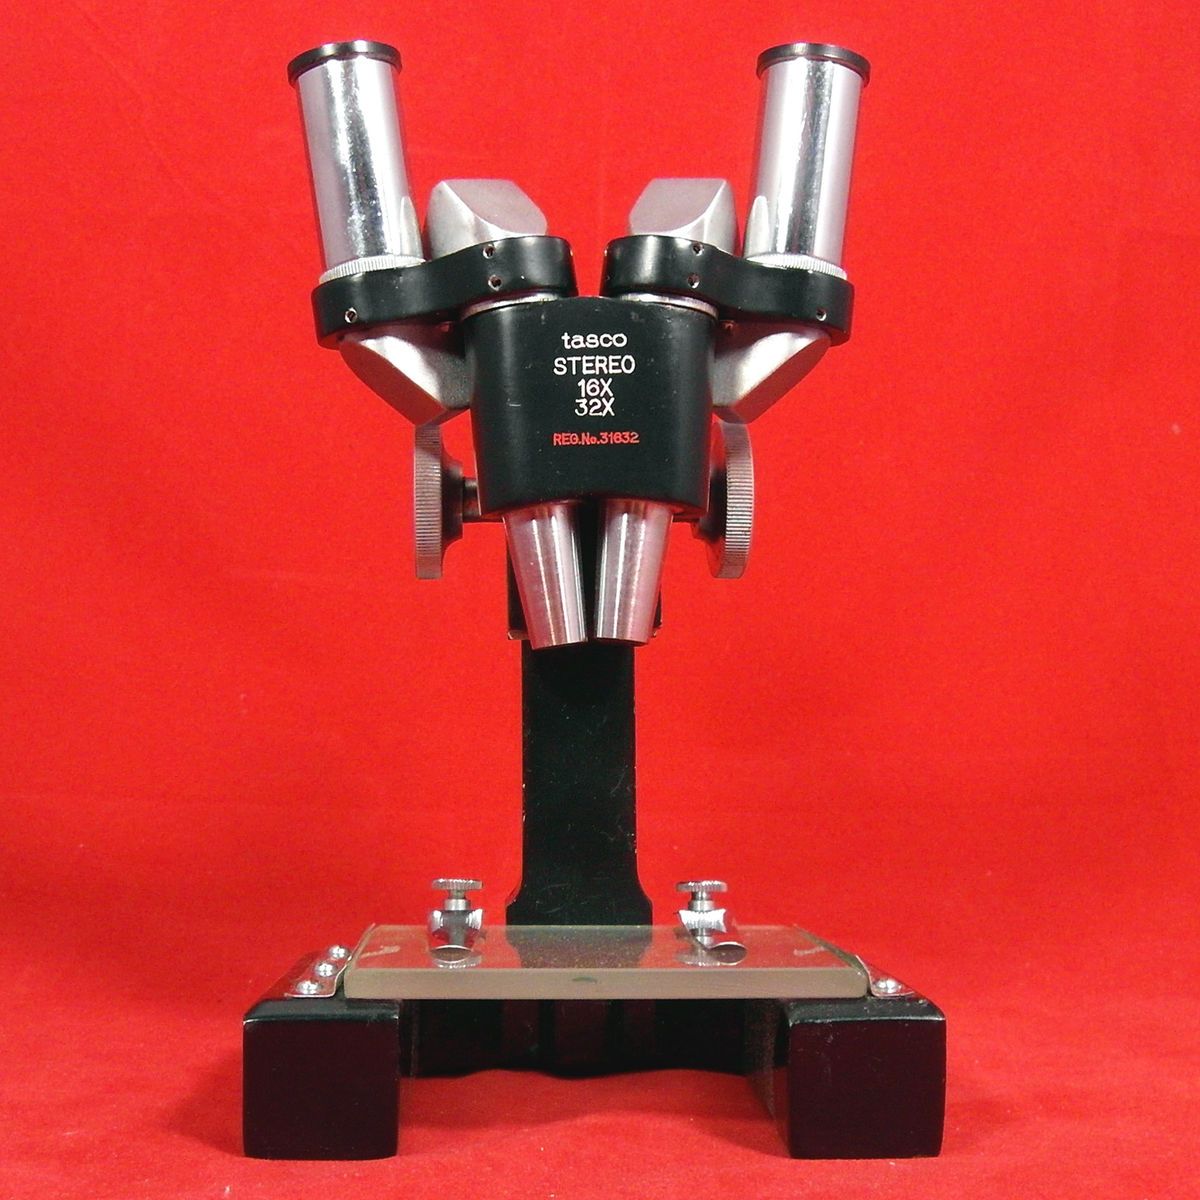  Field Portable 16x 32X Stereo Greenough Microscope w Case Tasco